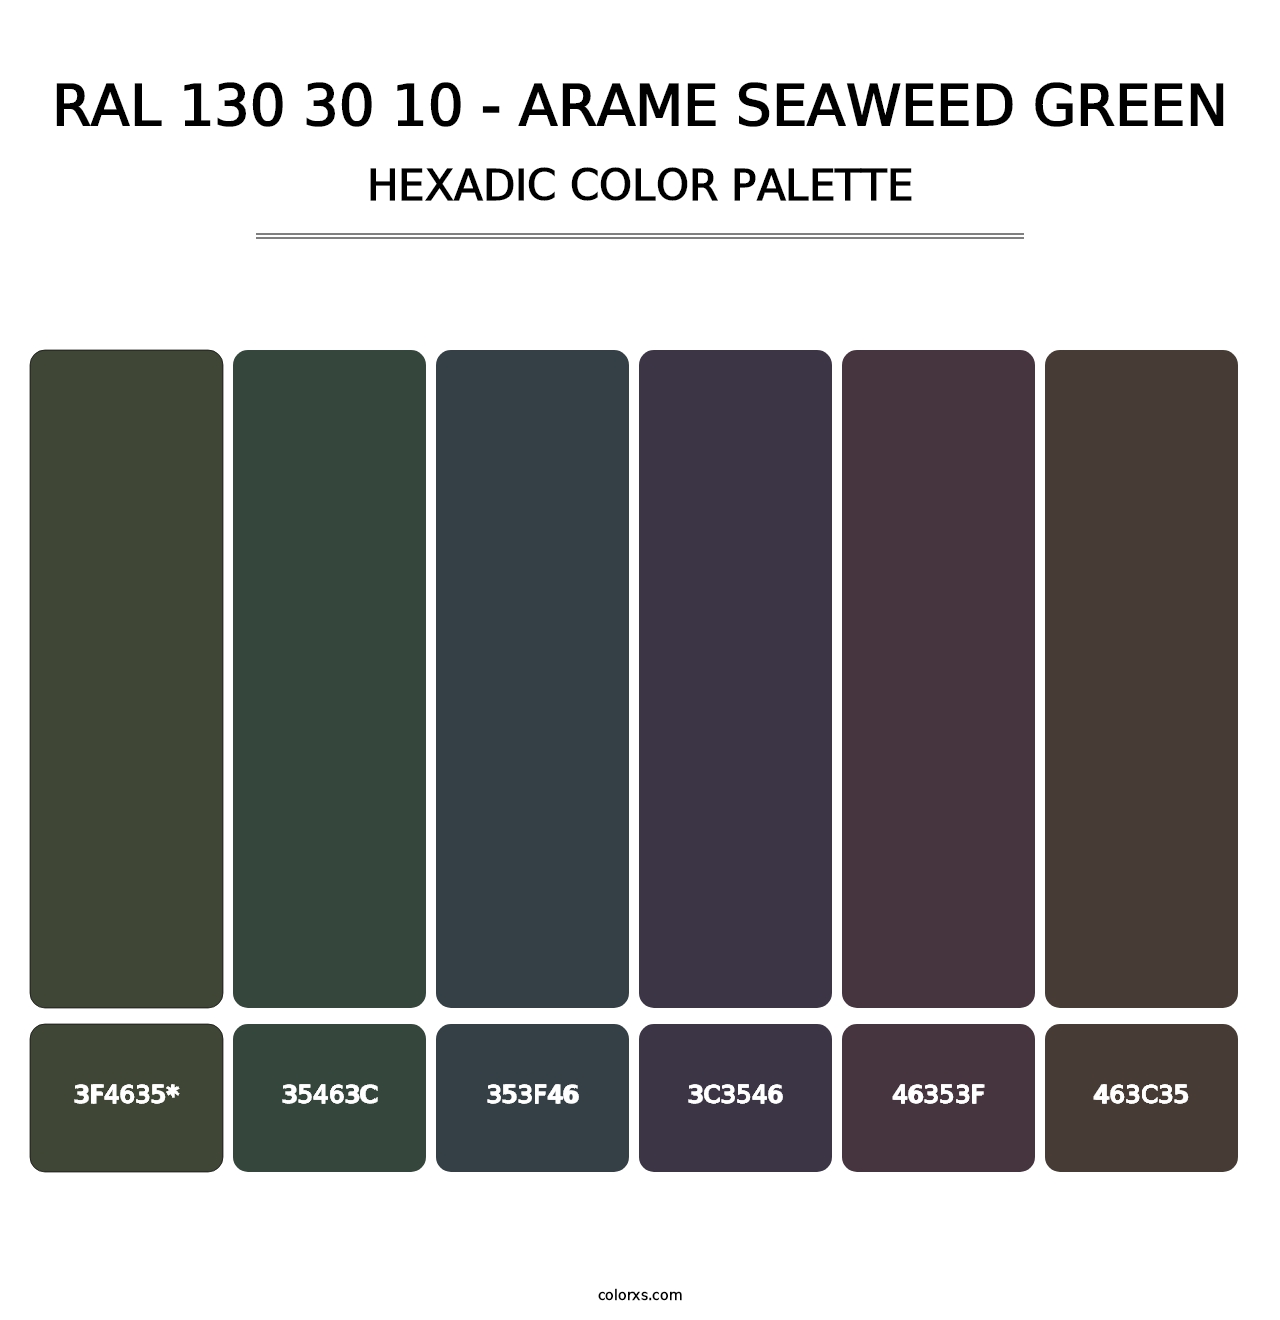 RAL 130 30 10 - Arame Seaweed Green - Hexadic Color Palette